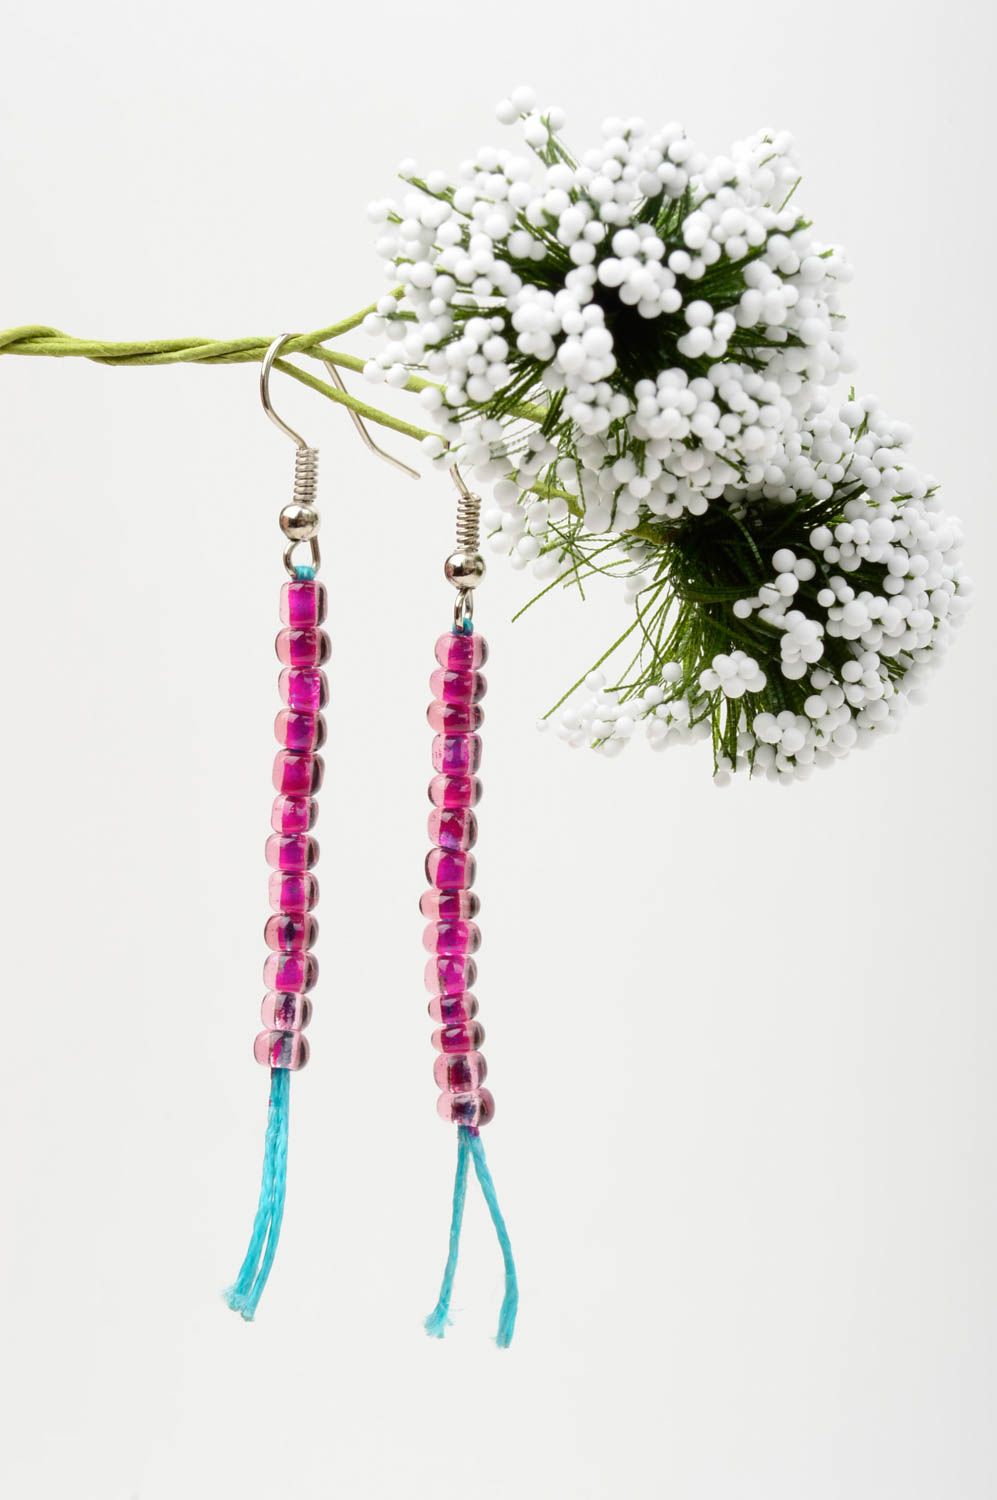 Handmade earrings designer earrings beads earrings for girl gift ideas photo 1